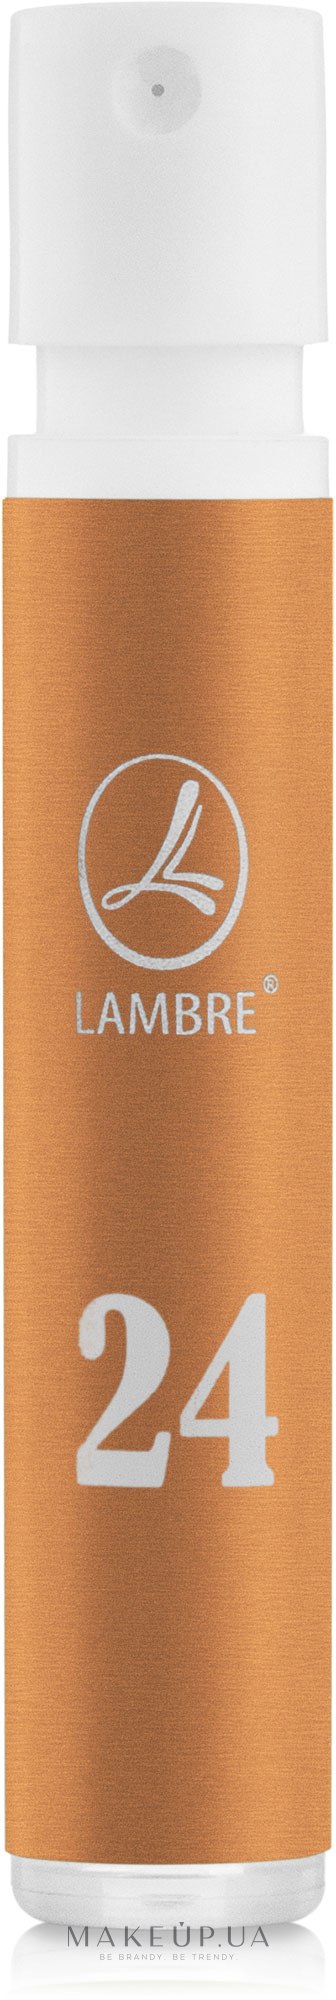 Lambre 24 - Духи (пробник) — фото 1.2ml